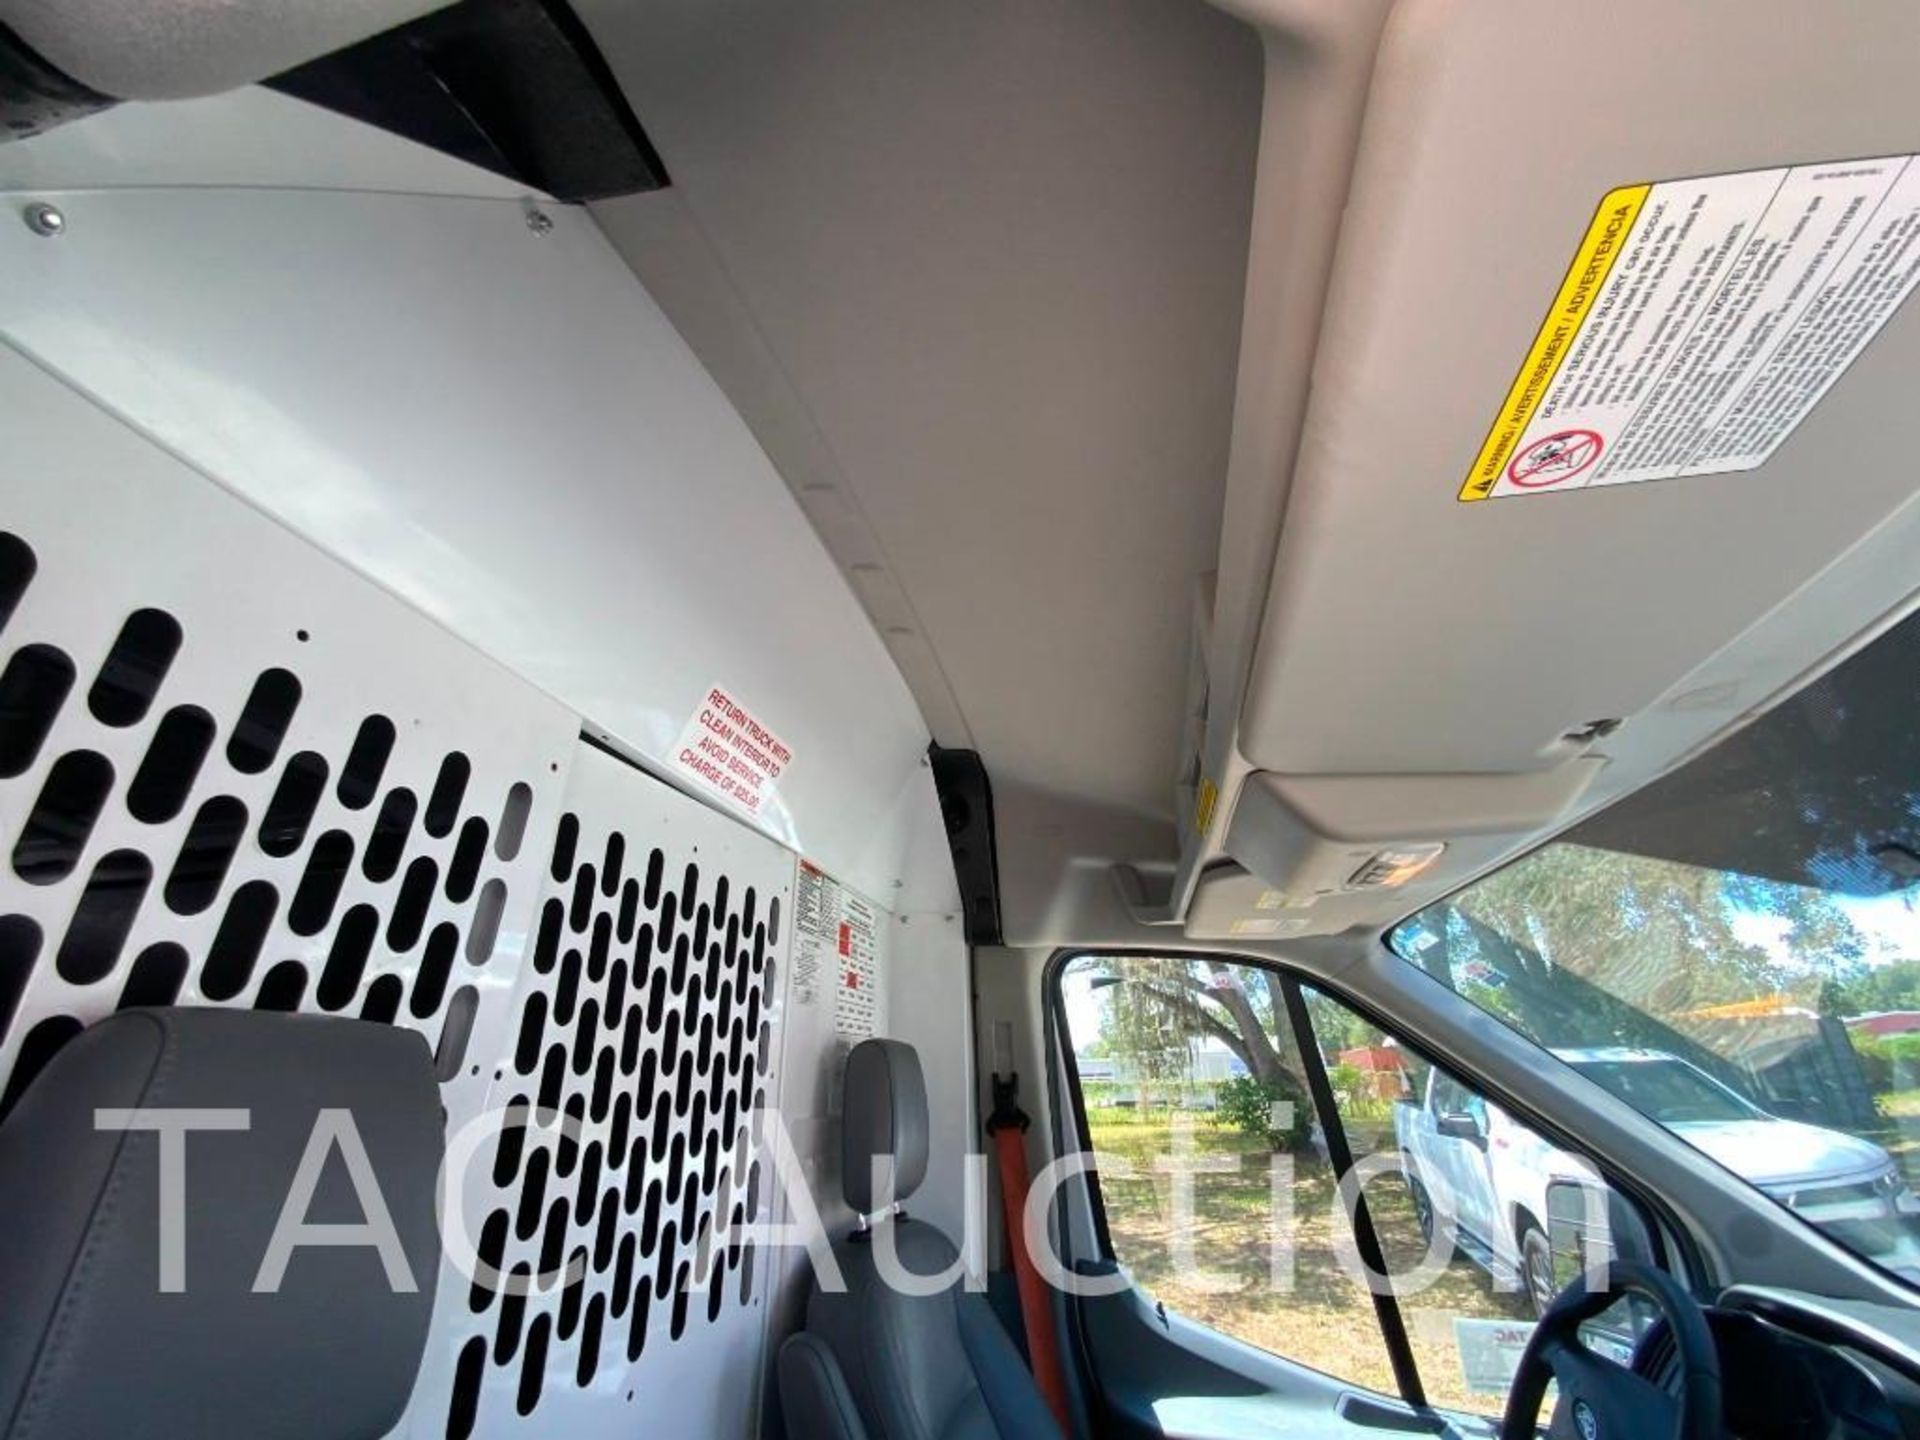 2019 Ford Transit 150 Cargo Van - Image 19 of 48